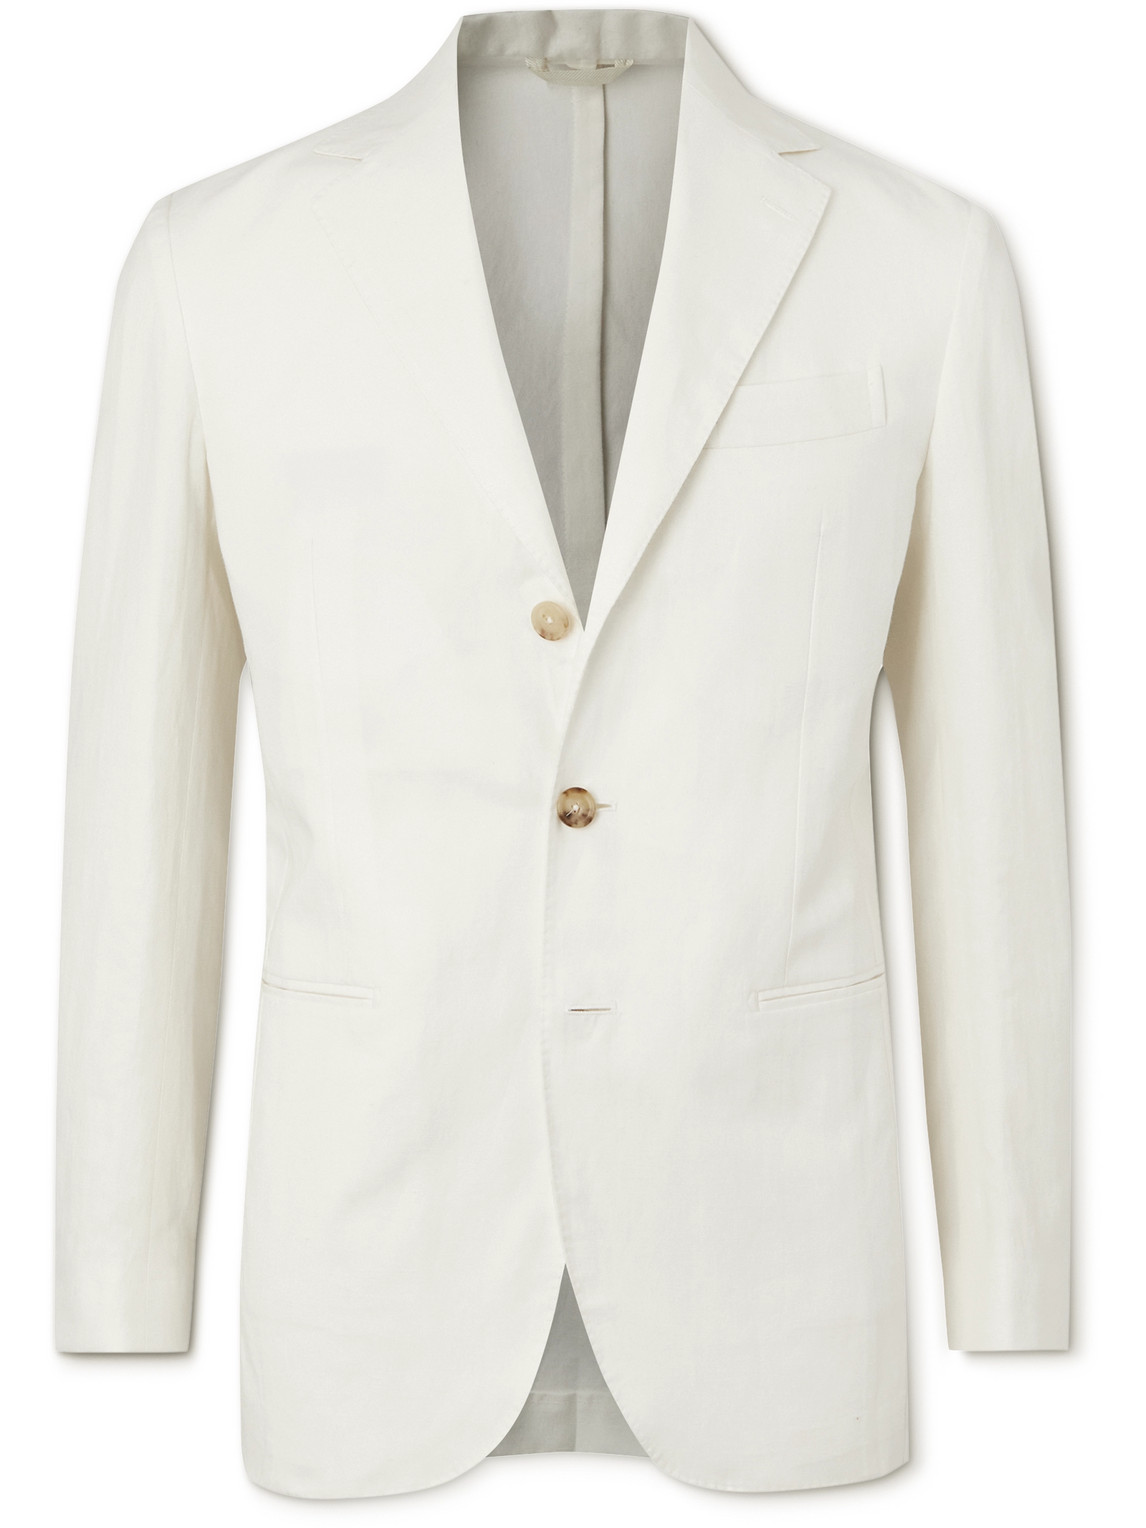 Unstructured Cotton and Hemp-Blend Suit Jacket